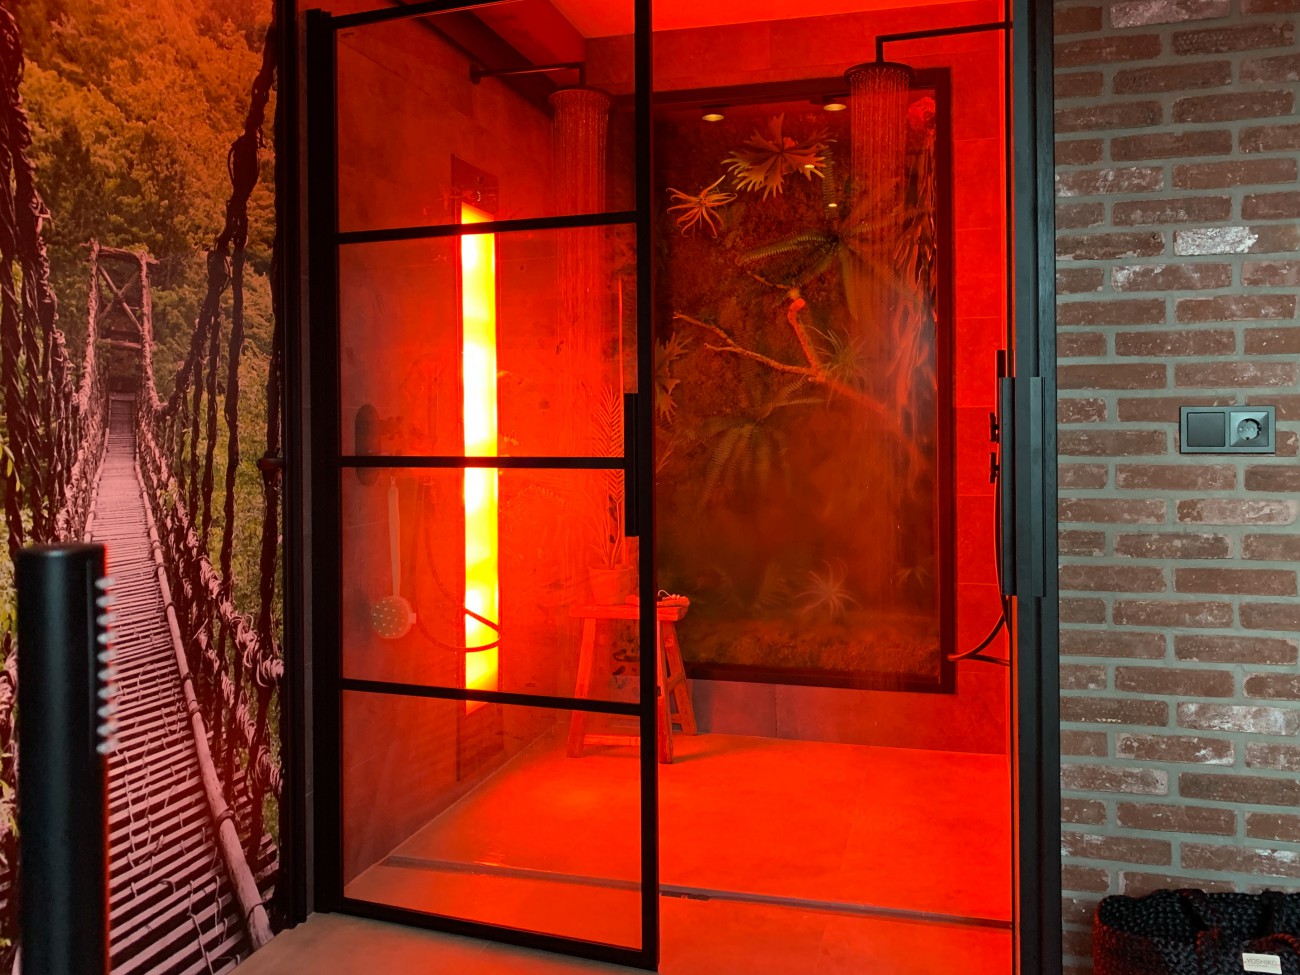 de sunshower heeft een infrarood straling jellina detmar interieur styling blog